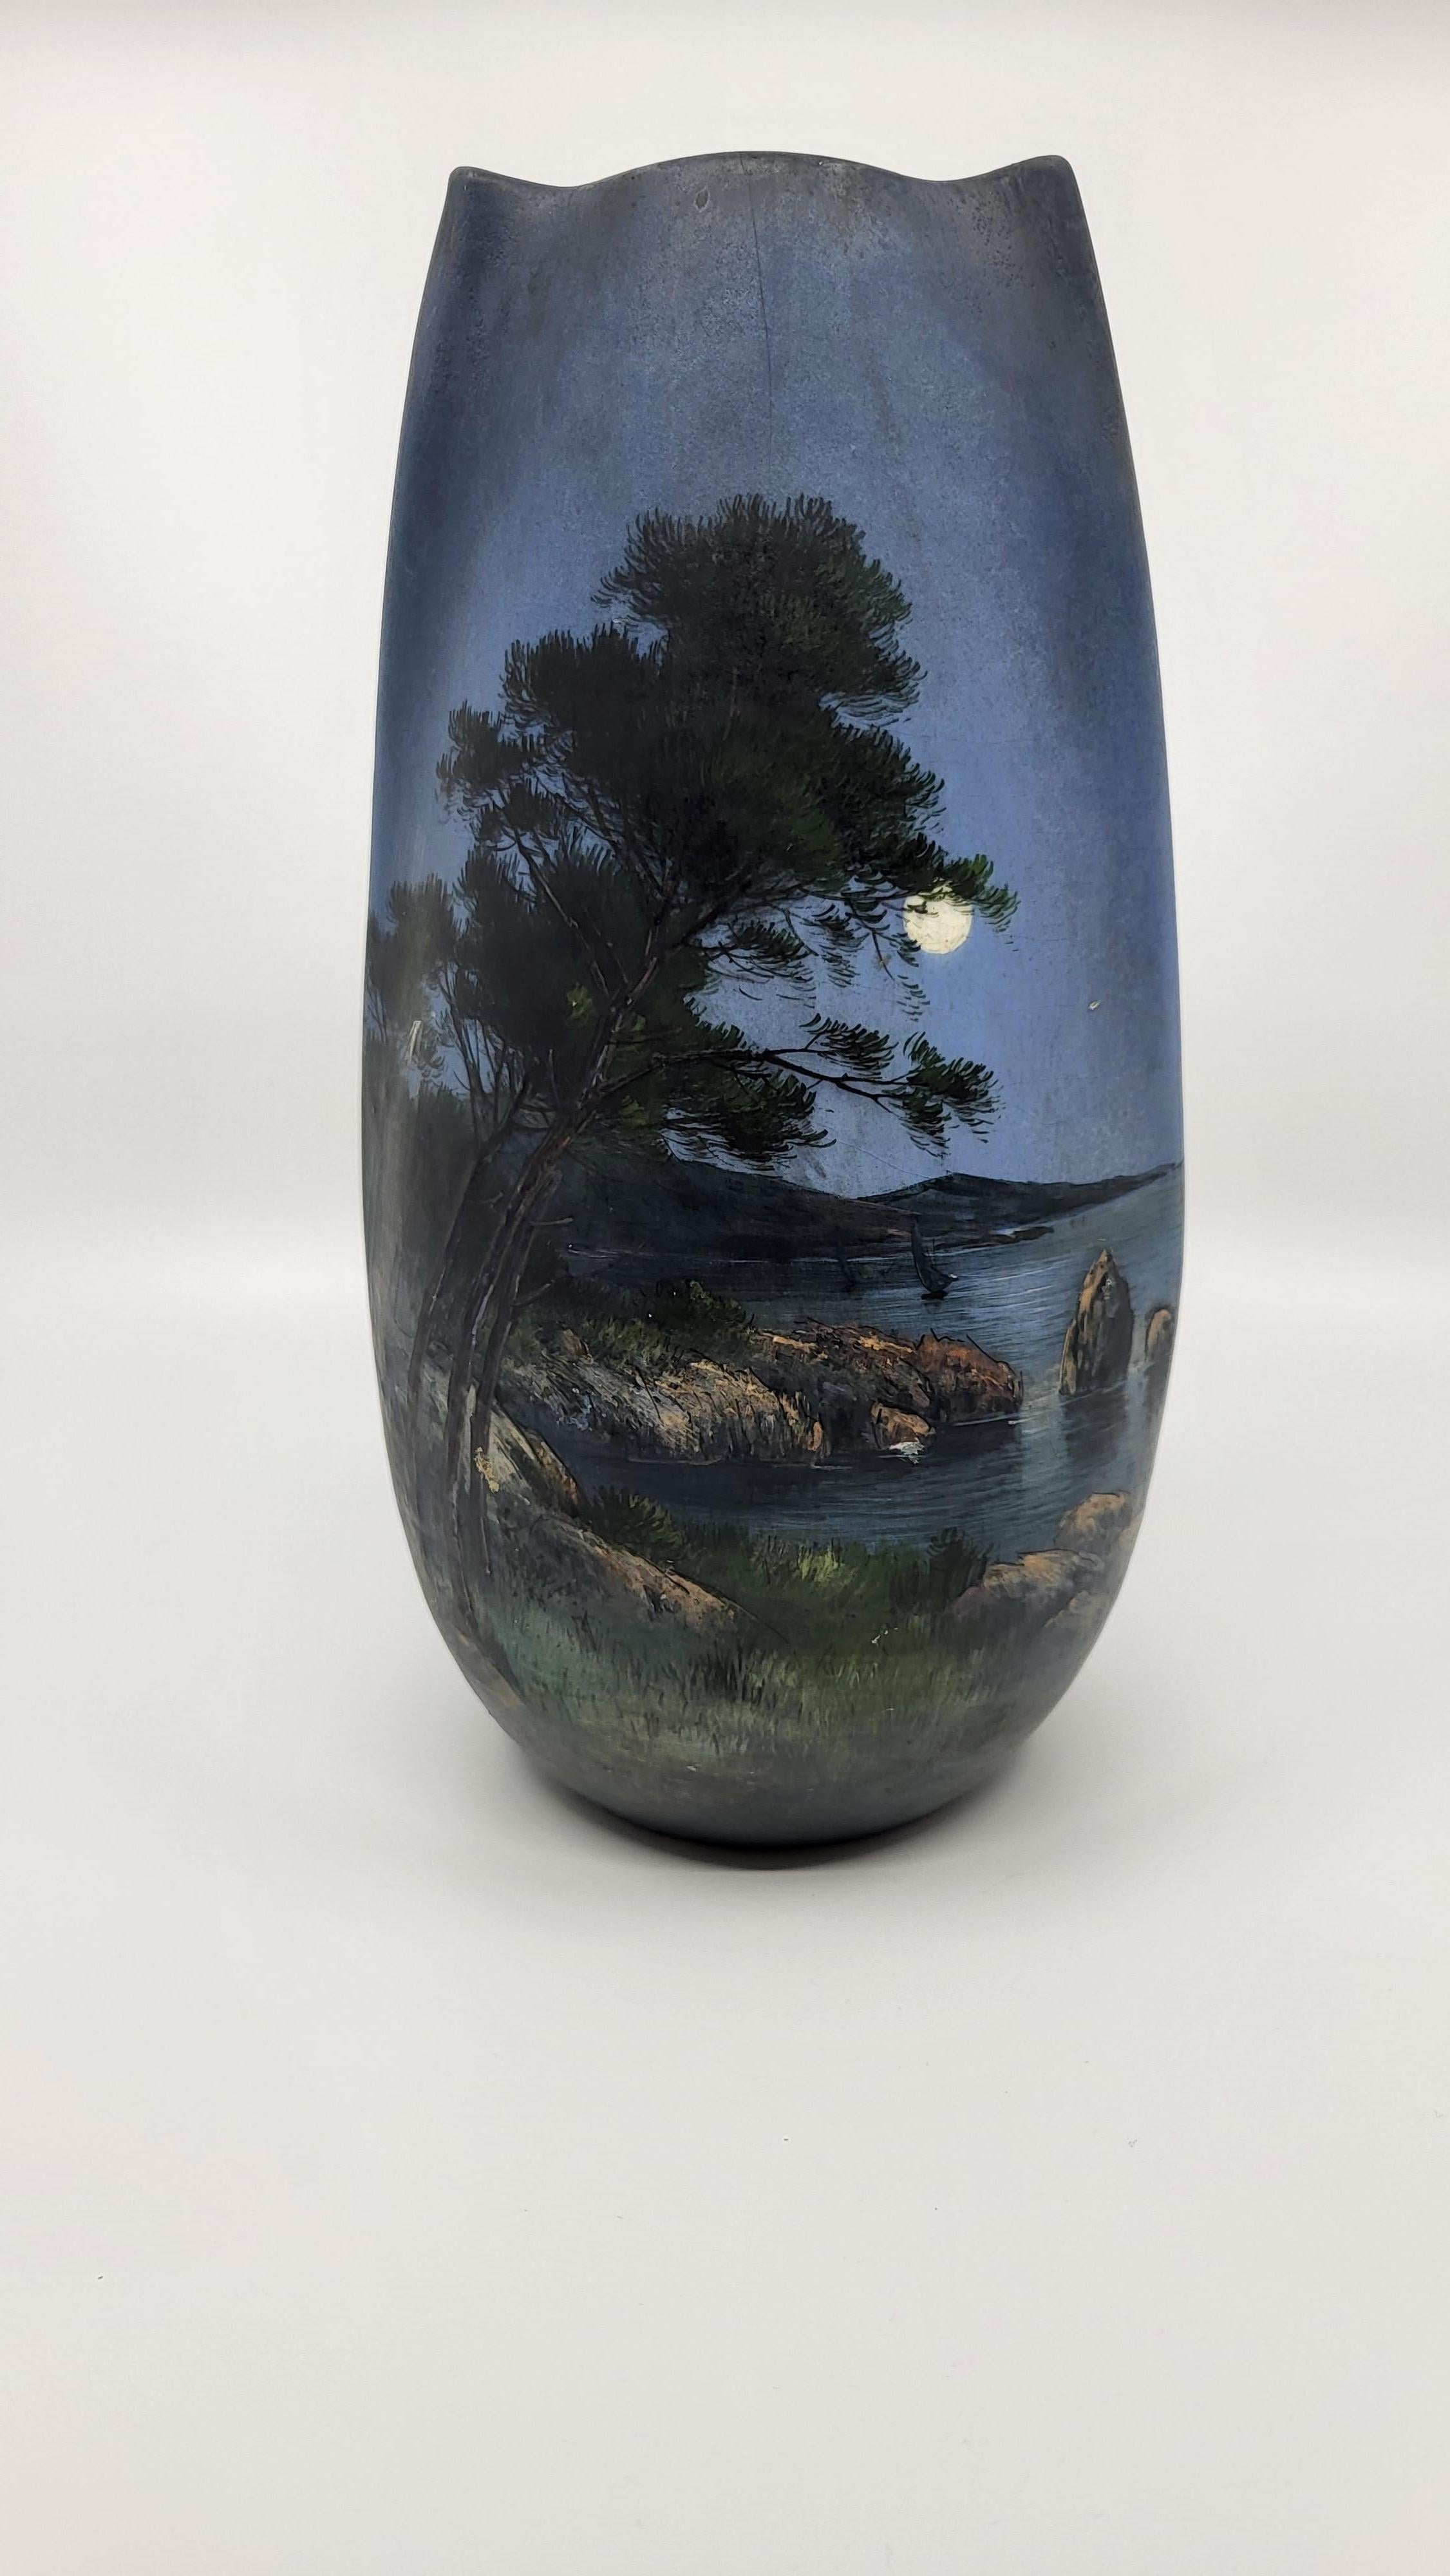 Vase Jérôme Massier (1820-1909)
Décor émaillé, produit avant 1900.
Les lettres AM signifient Alpes Maritimes donc le vase fut produit dans son atelier de GOLFES-JUAN, et de la main de Jérôme Massier. Une belle lune lumineuse est dessinée ne pas